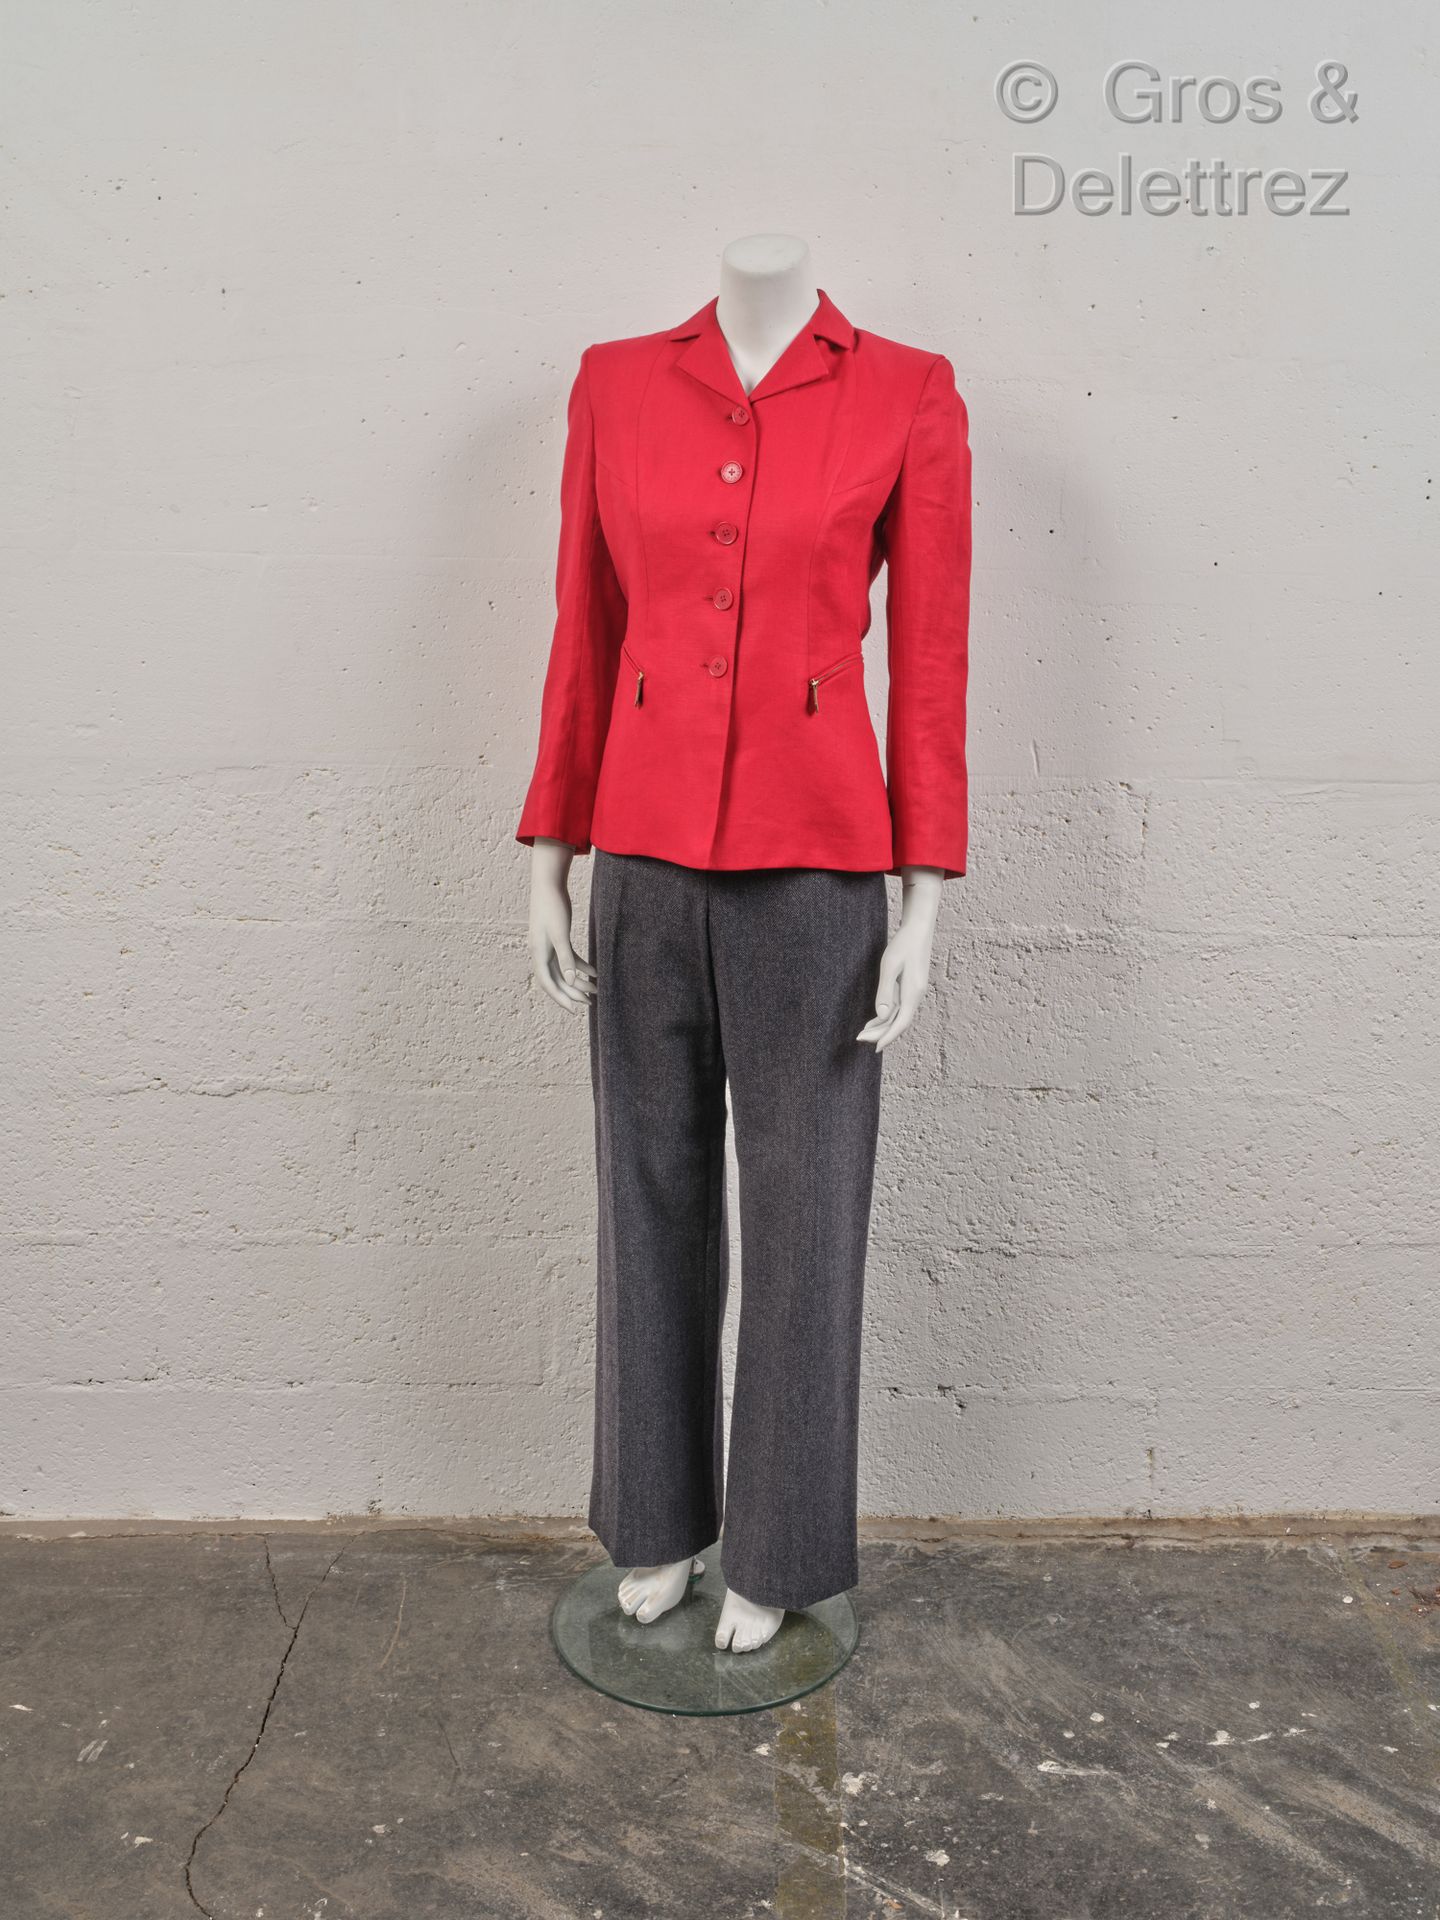 HERMÈS Paris made in France 装备包括一件红色亚麻外套，有缺口的领子，单排扣，两个拉链口袋，长袖，以及人字形羊绒毛料的裤子。赤褐色的划&hellip;